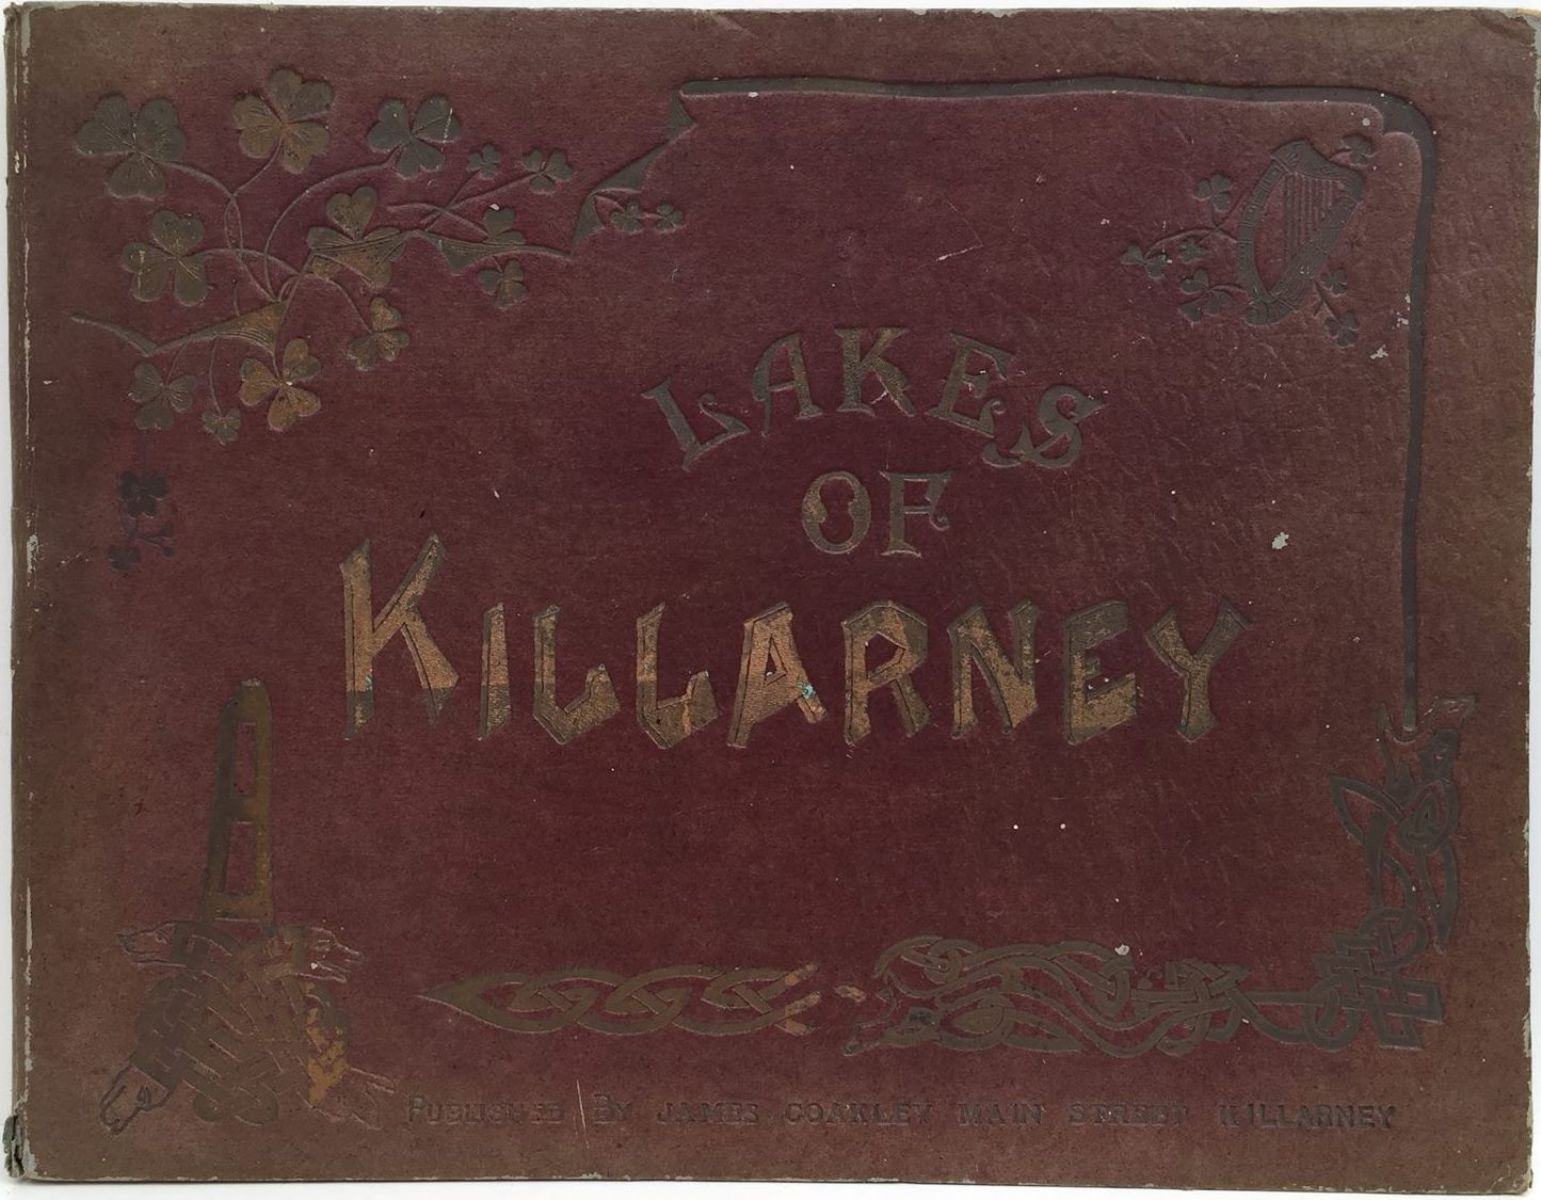 LAKES OF KILLARNEY: Photographic View Album